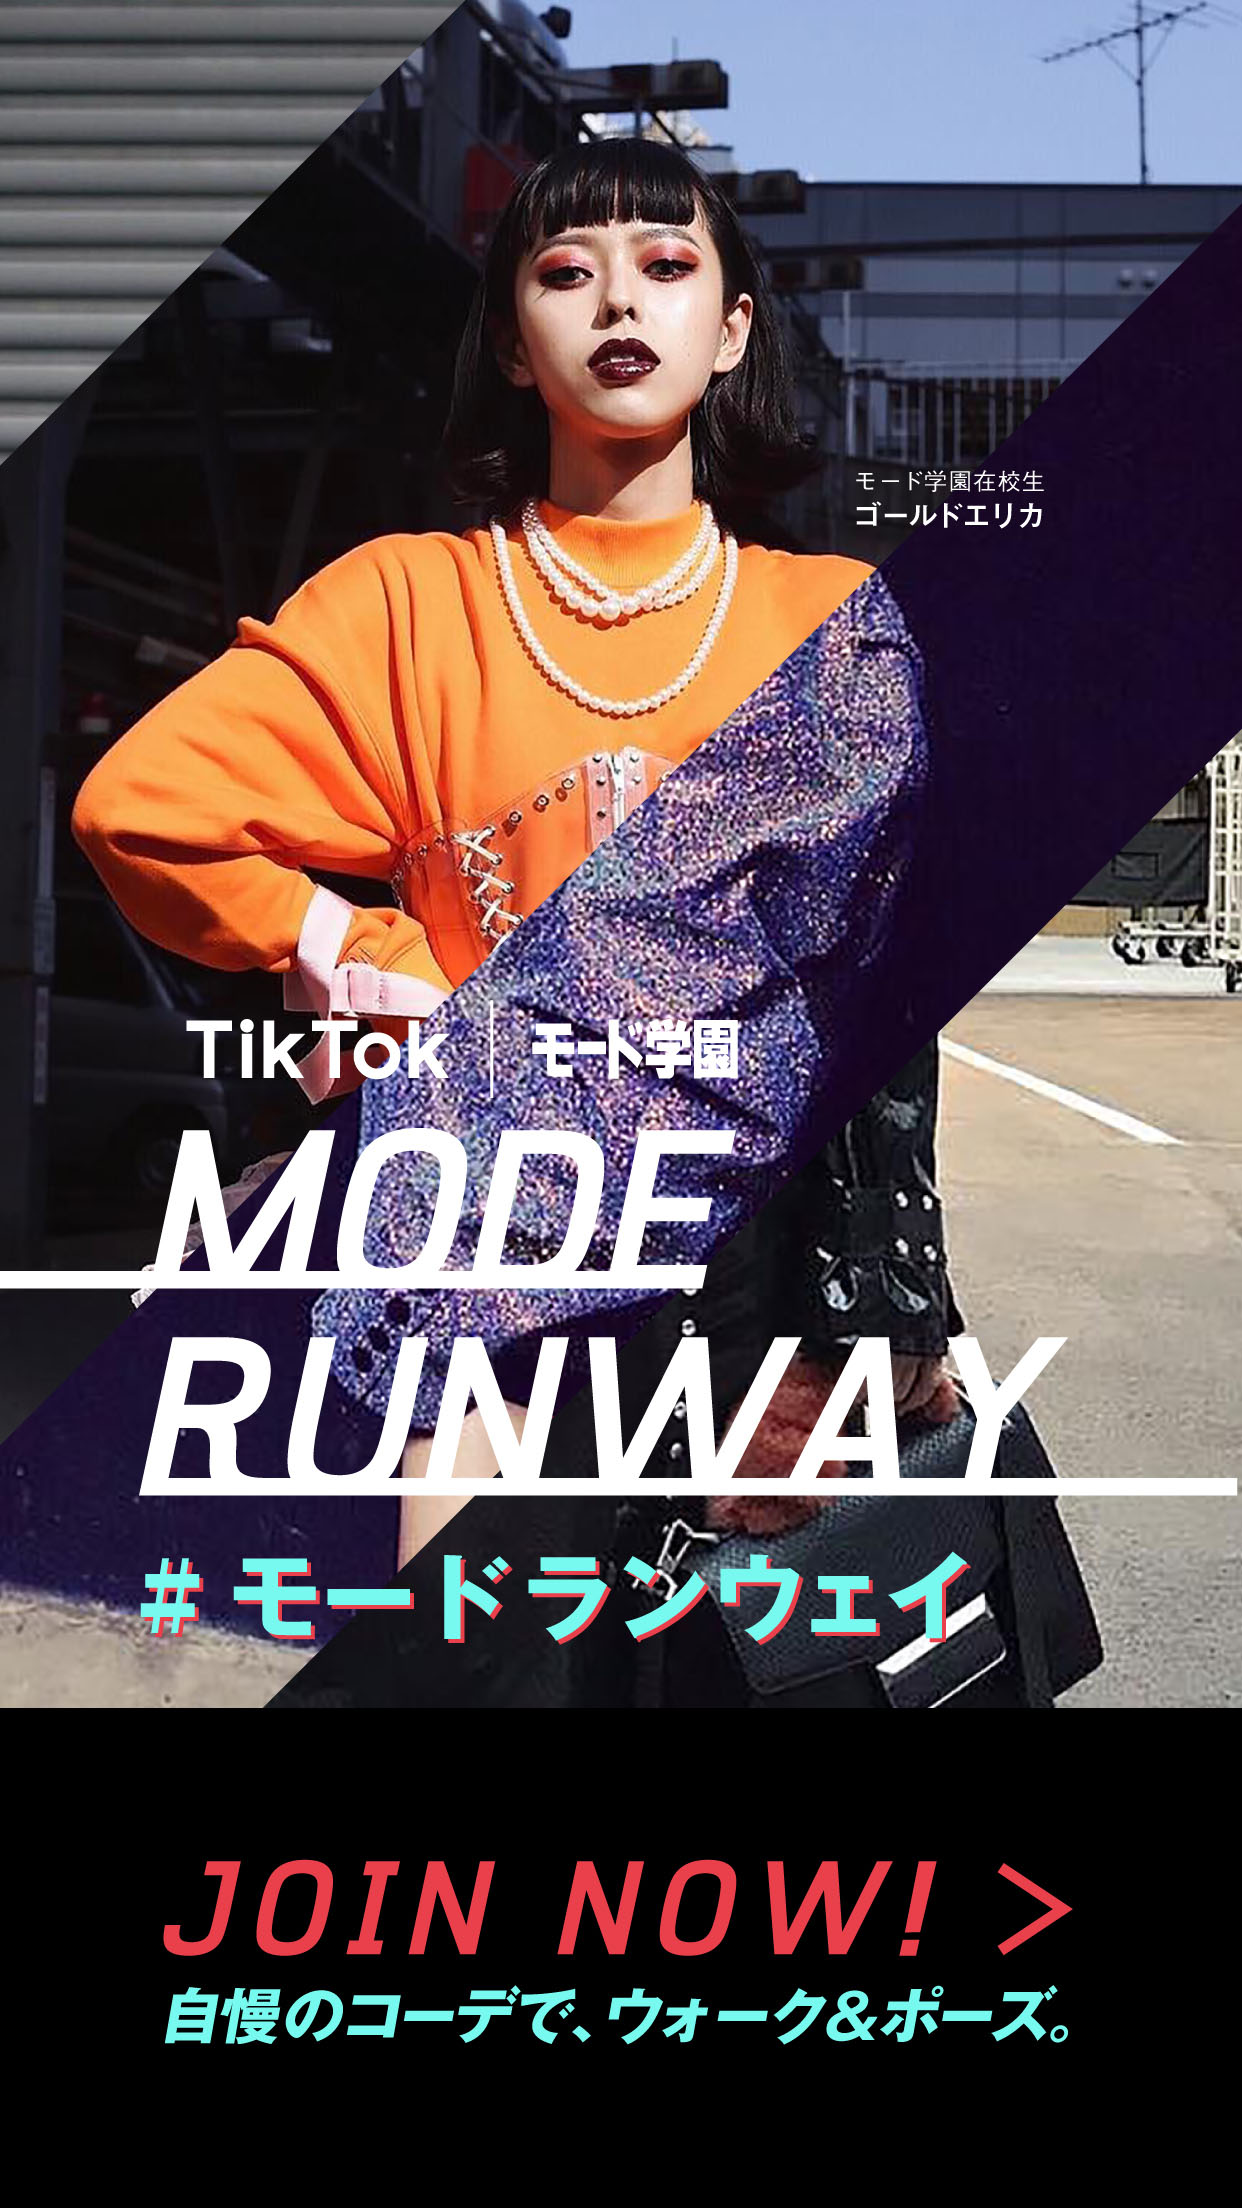 Tiktok モードランウェイ で自慢のコーデを投稿しよう あの有名tiktokerやモード学園在校生の個性あふれるコーデにも注目 学校法人 日本教育財団のプレスリリース